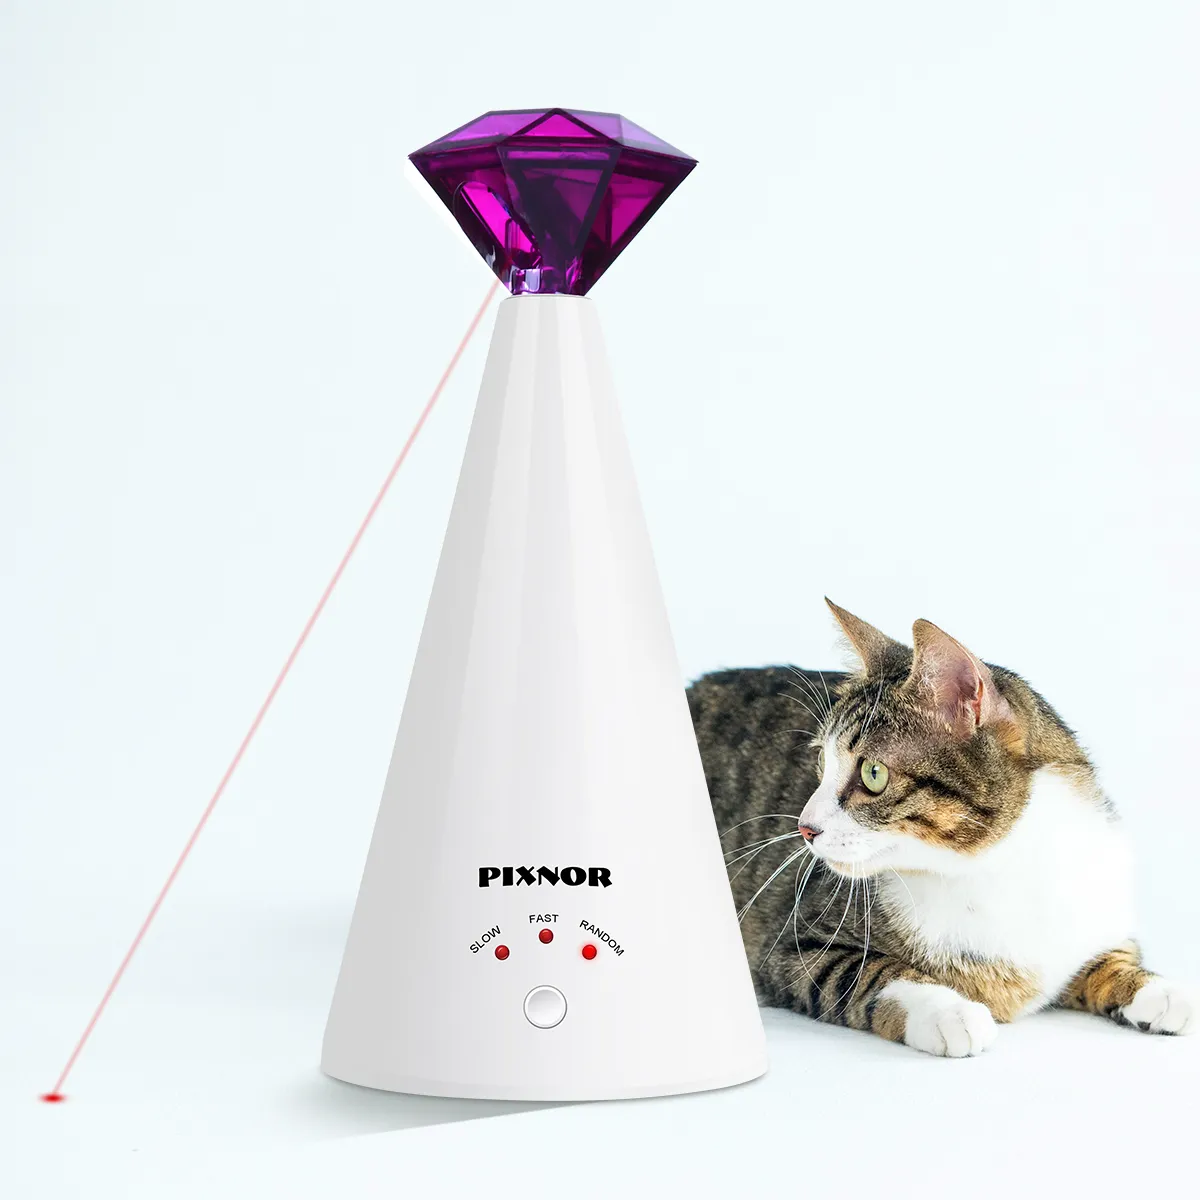 PIXNOR dispositif de taquinage Laser intelligent jouet électrique maison chat interactif réglable 3 vitesses pointeur pour animaux de compagnie violet 2011125666337